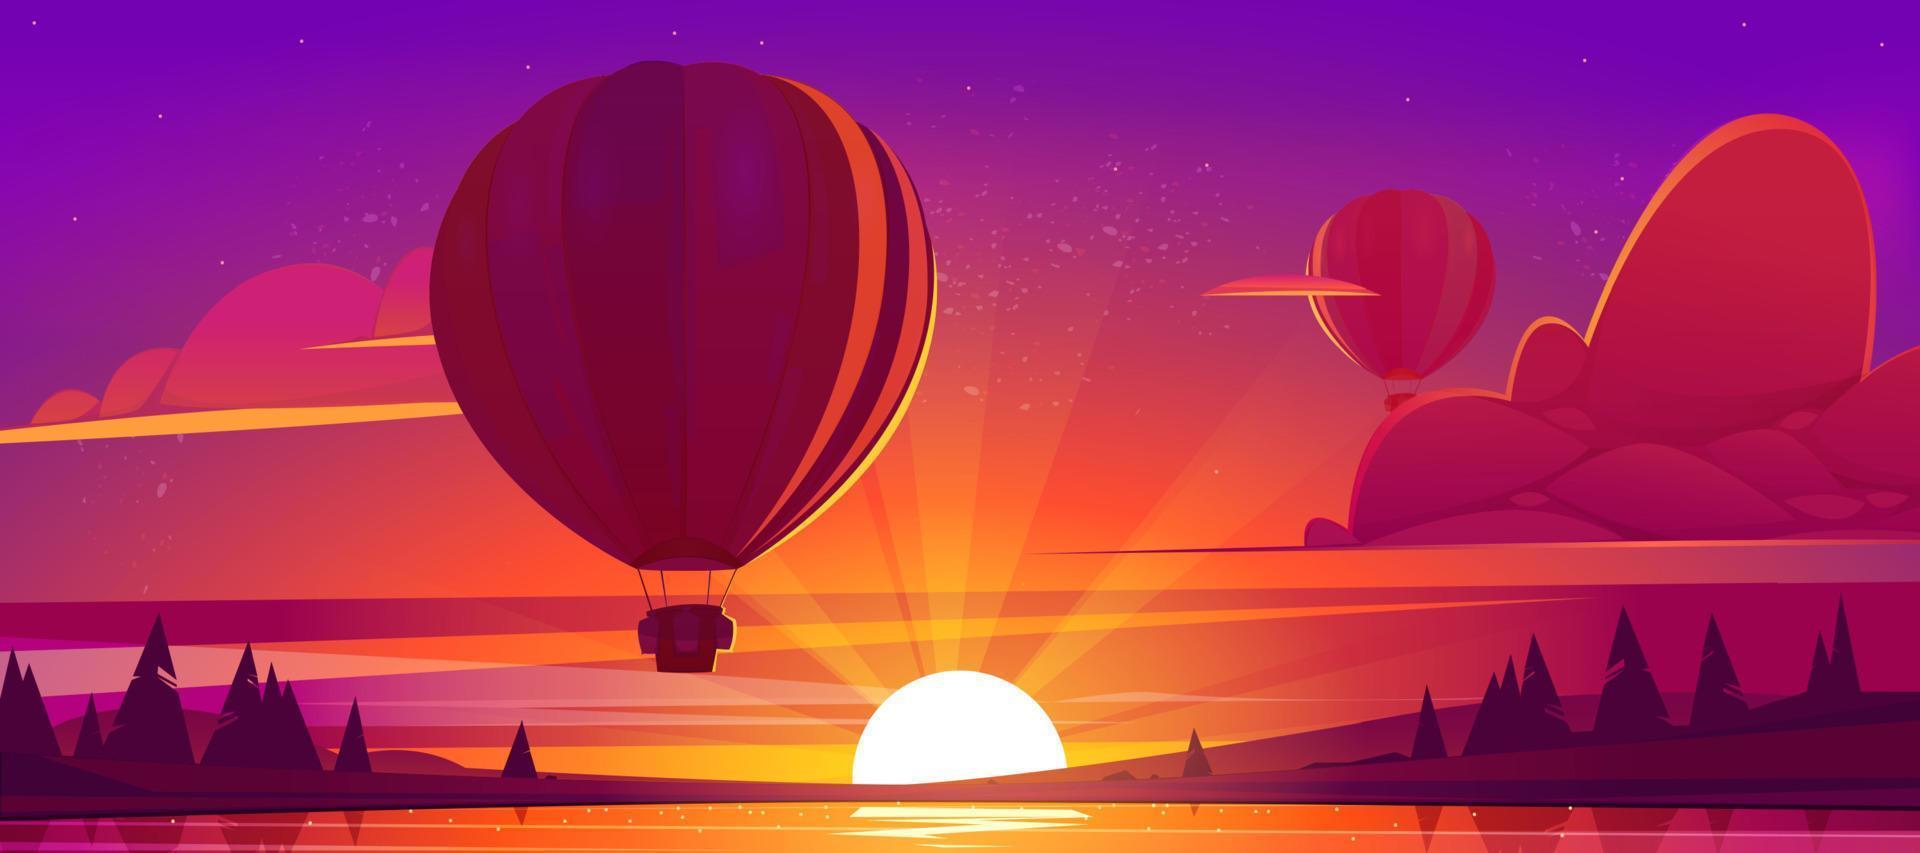 paisagem do sol com lago e balões de ar quente vetor